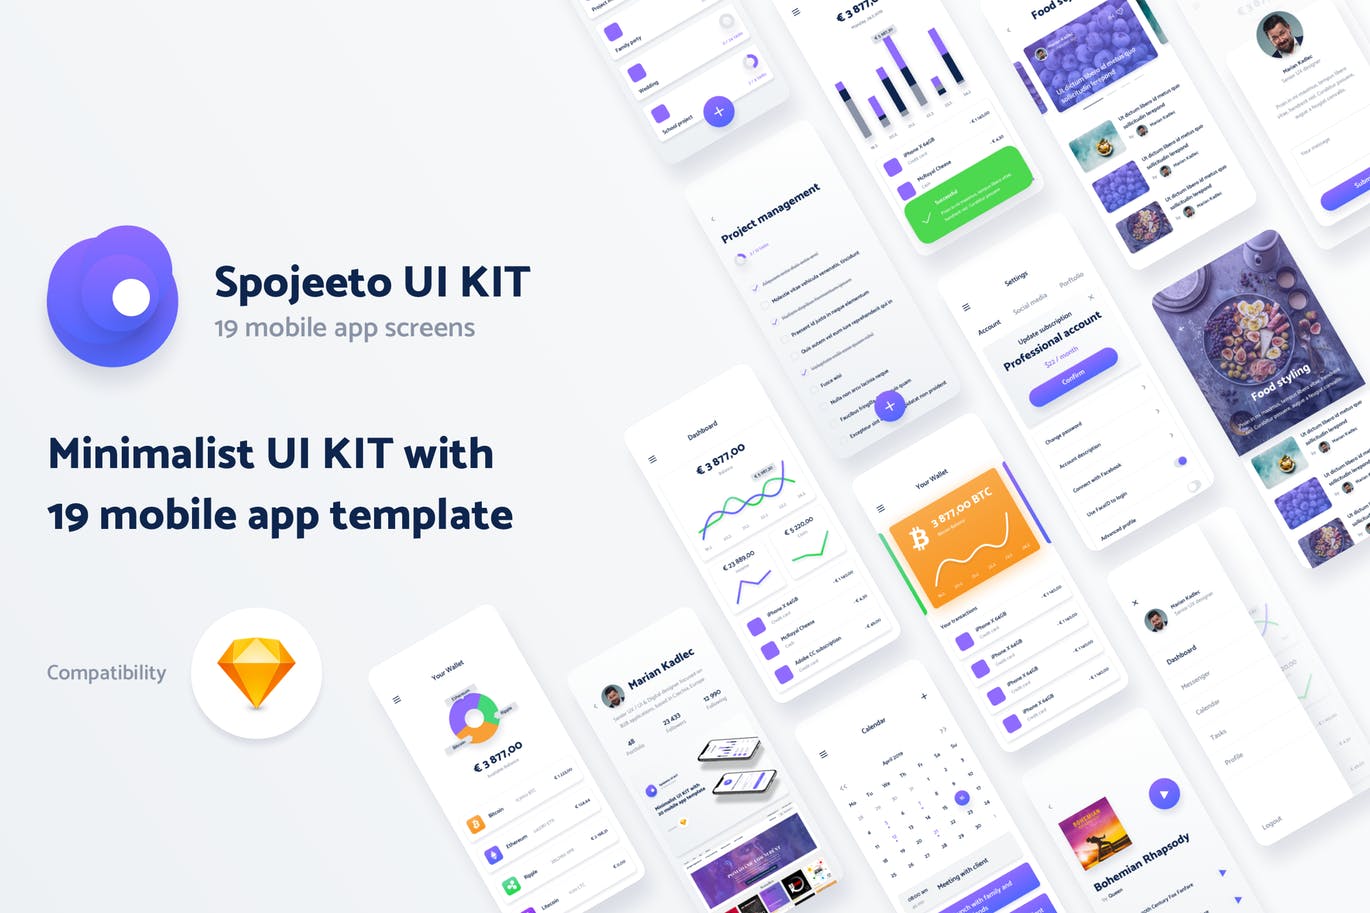 极简主义设计风格APP应用UI设计非凡图库精选套件v2 Vol. 2 – Spojeeto Mobile App UI Kit插图